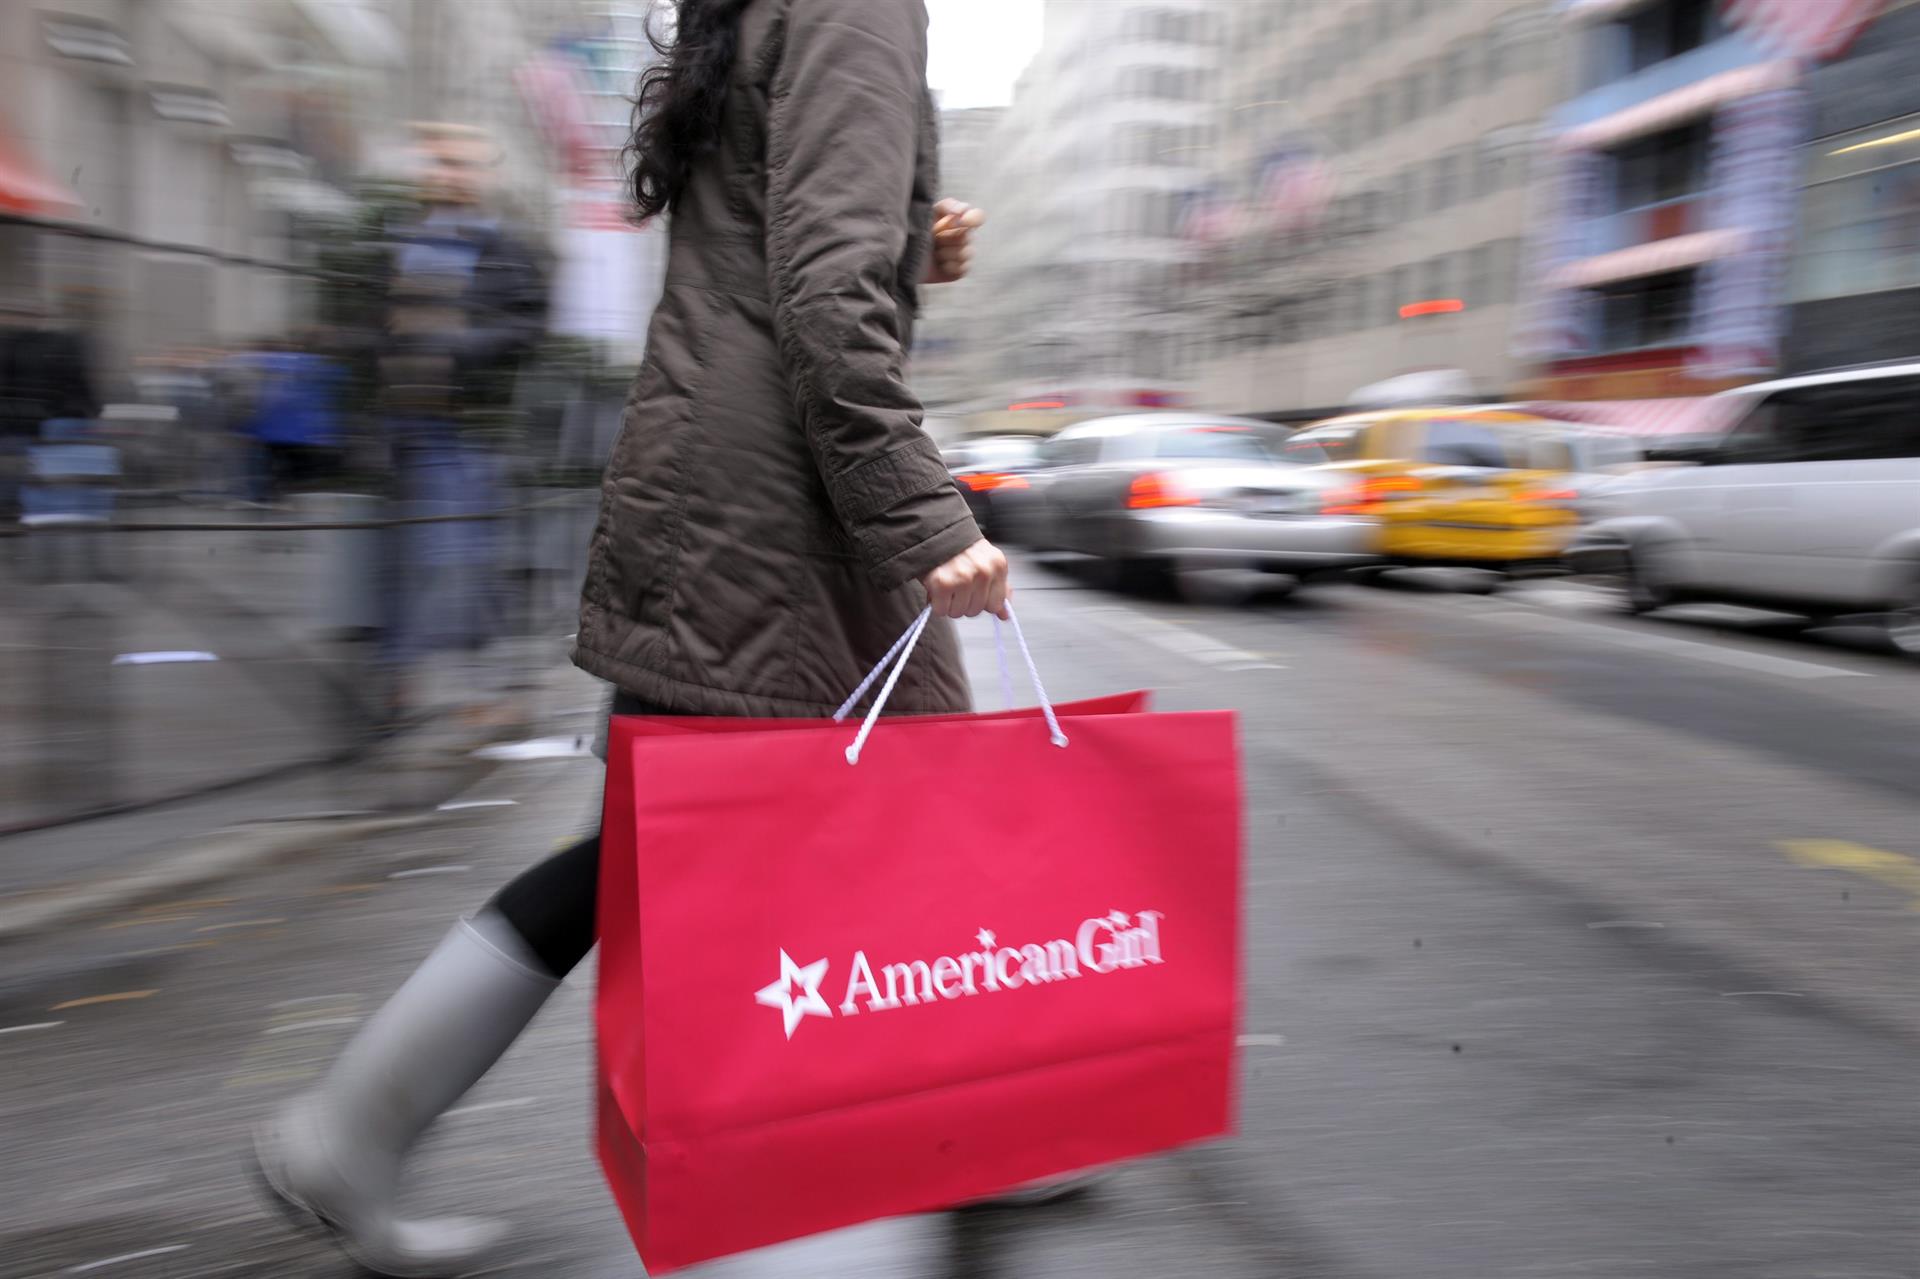 Imagen de archivo de una mujer cargando una bolsa luego de realizar una compra en Nueva York (EEUU). EFE/ANDREW GOMBERT
